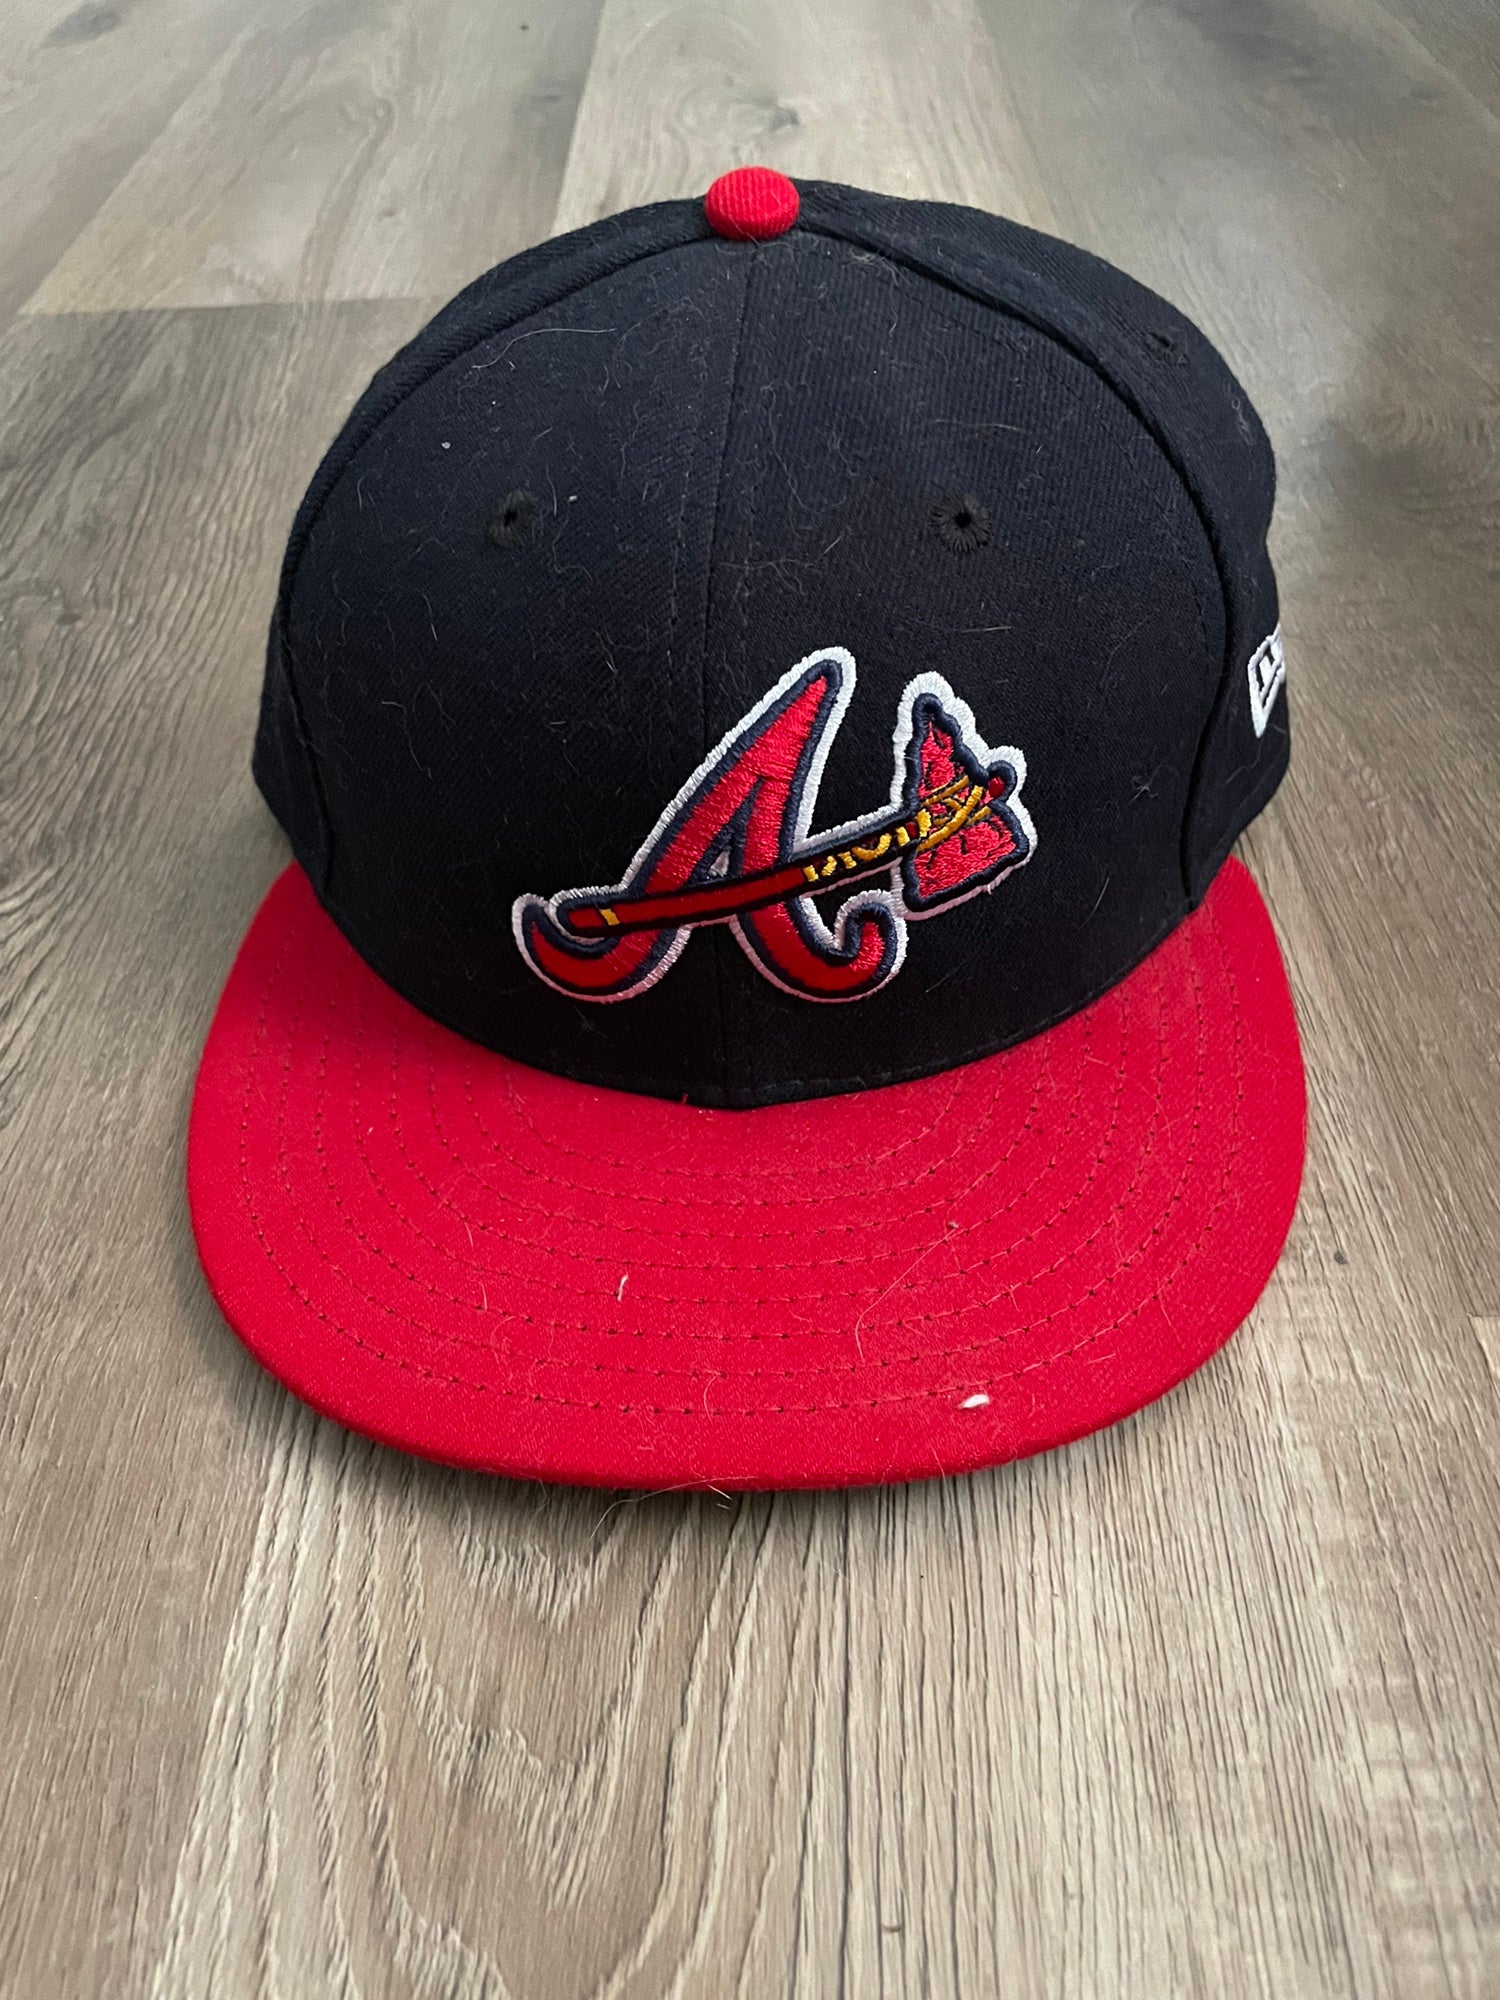 Atlanta Braves Caps